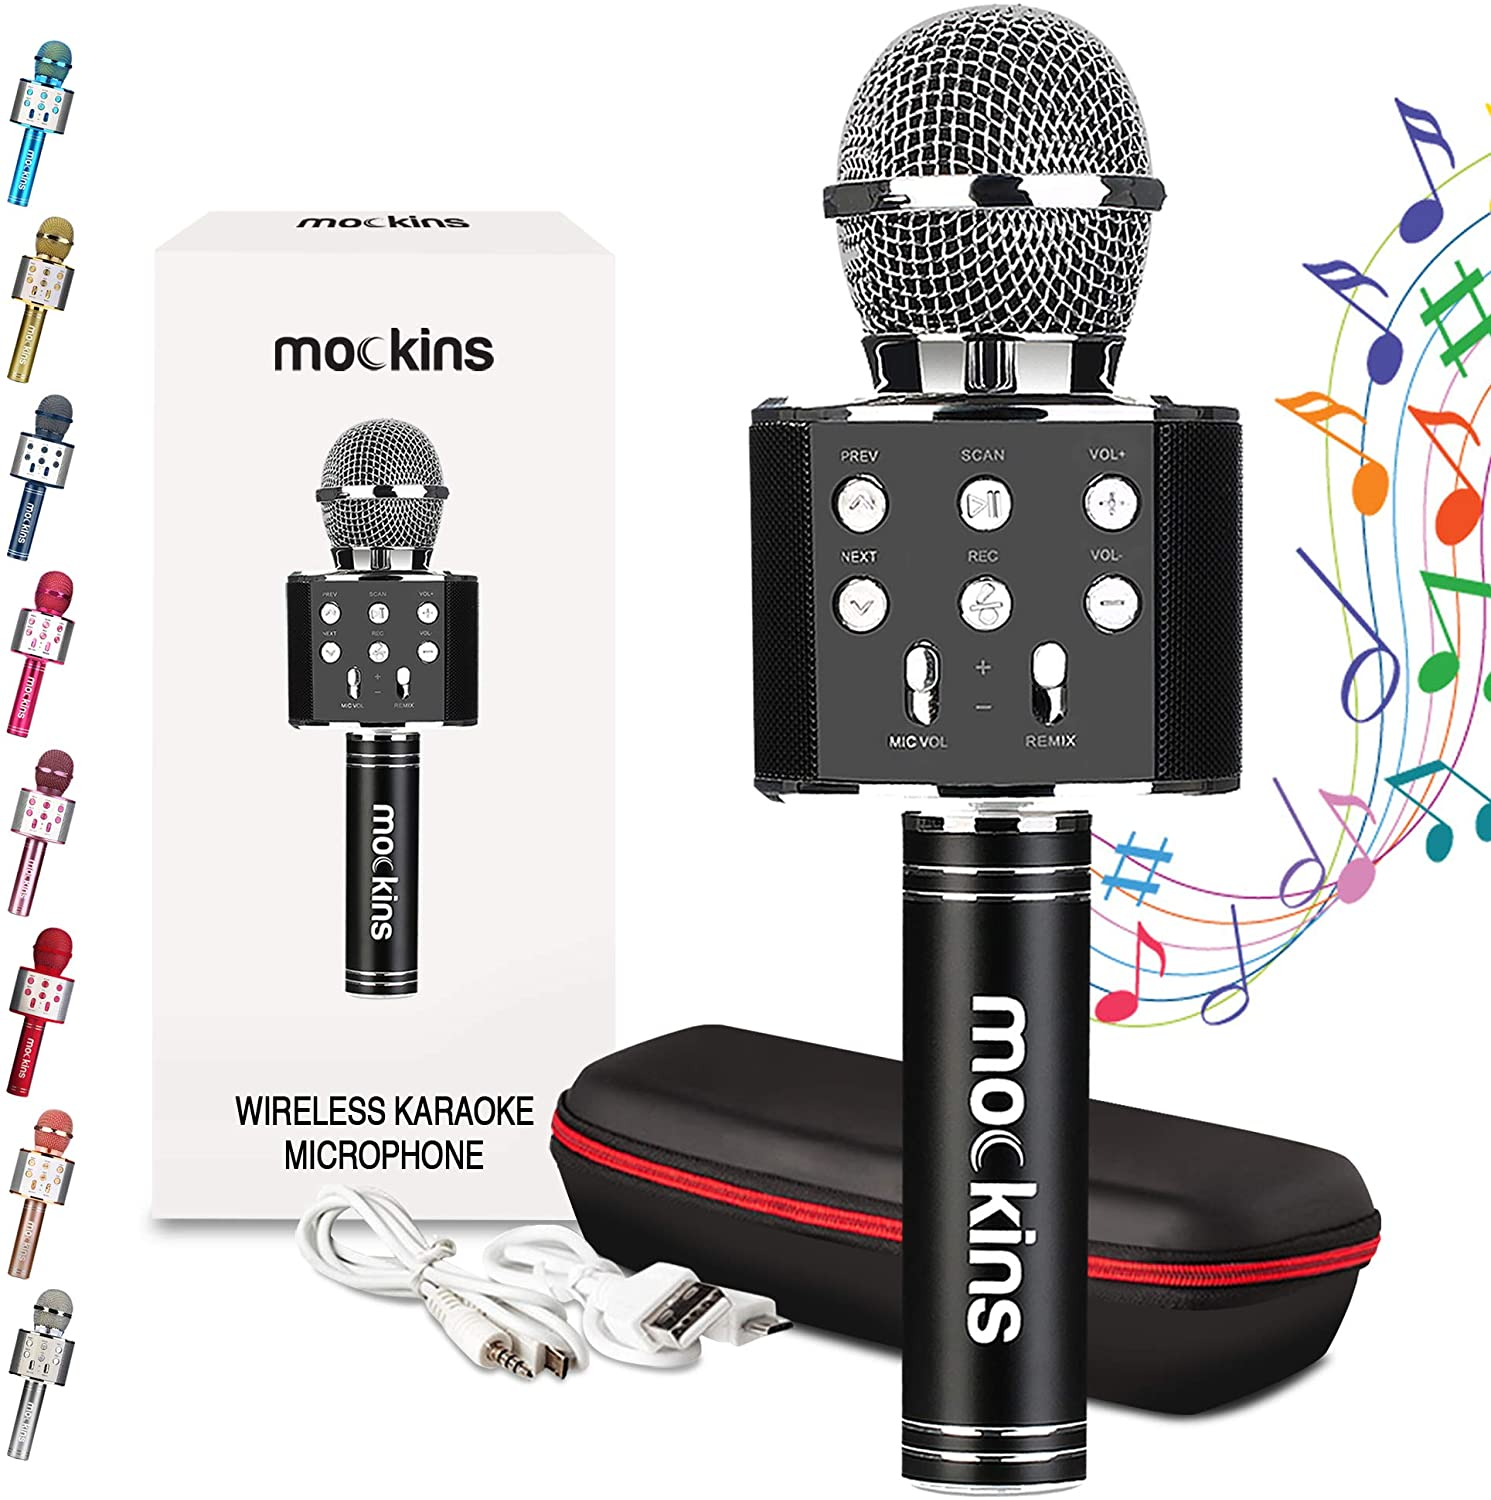 Compatible con Android/iOS PC Microfono Niños Bluetooth Portátil con Altavoz y Luces LED Micrófono Inalámbricos Karaoke para KTV Canta Partido Musica AUX o Teléfono Inteligente 